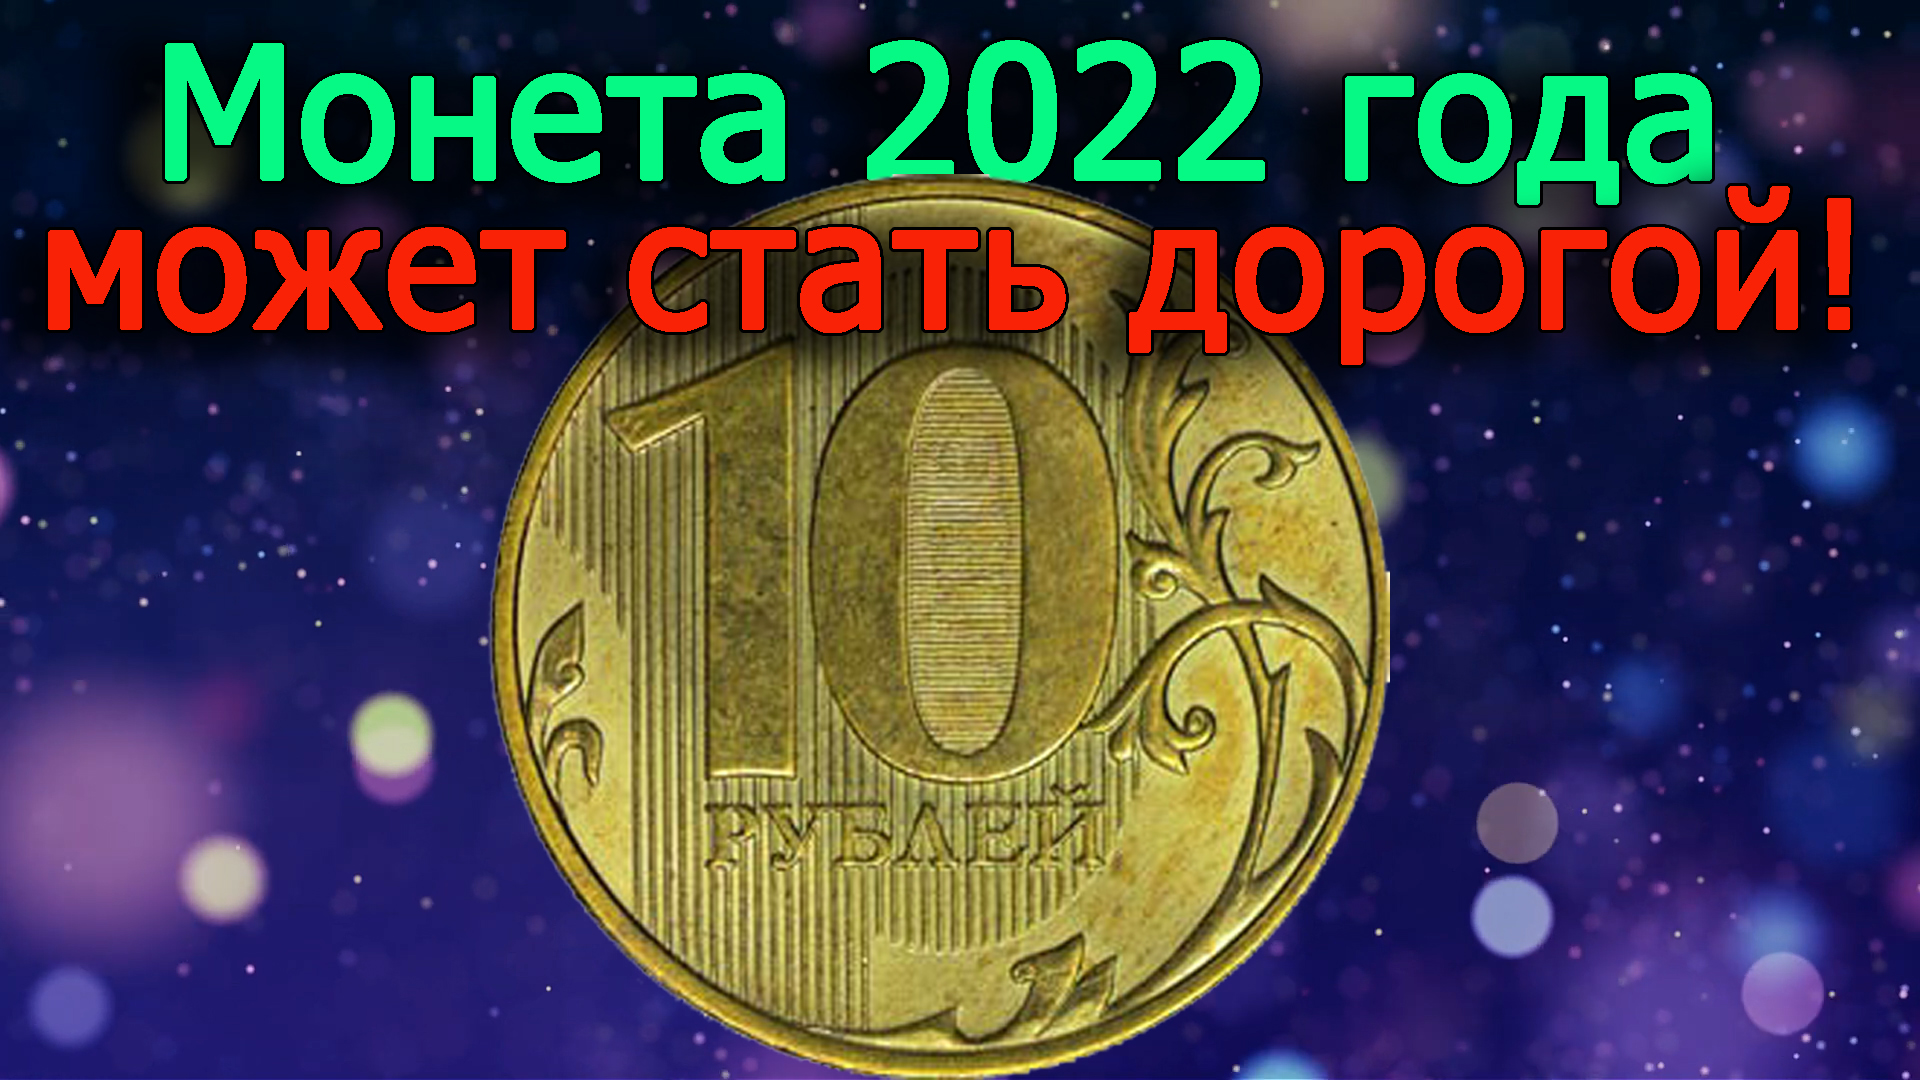 Очень дорогой может стать 10 рублей 2022 года. Как различить дорогую разновидность монеты!